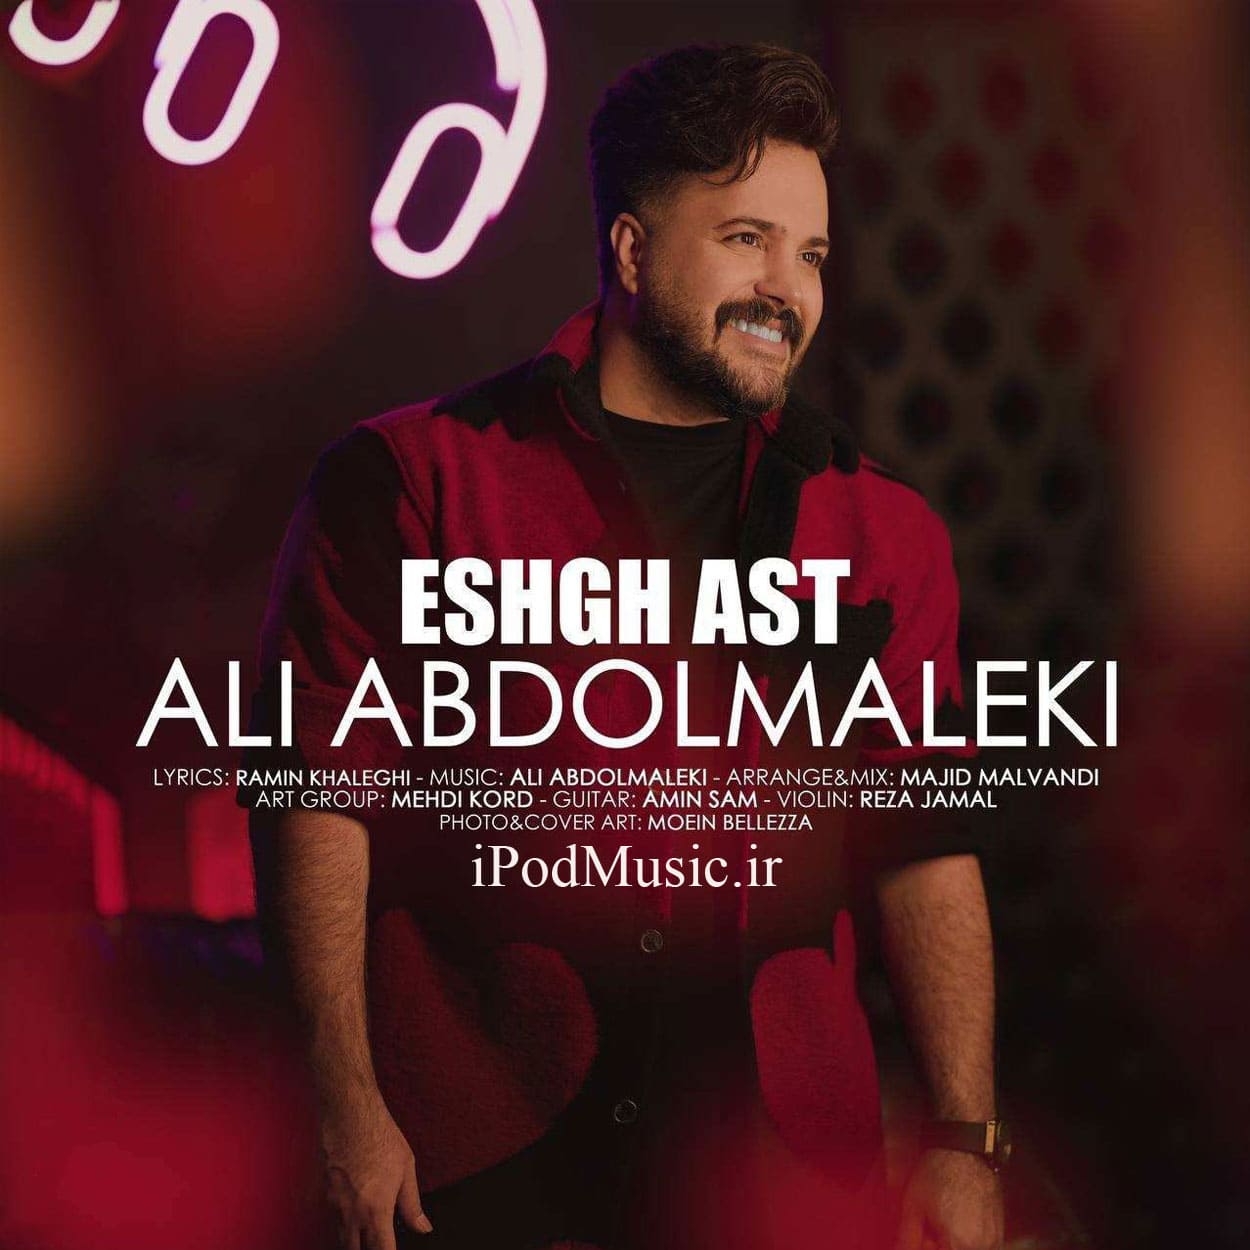 دانلود آهنگ عشق است از علی عبدالمالکی